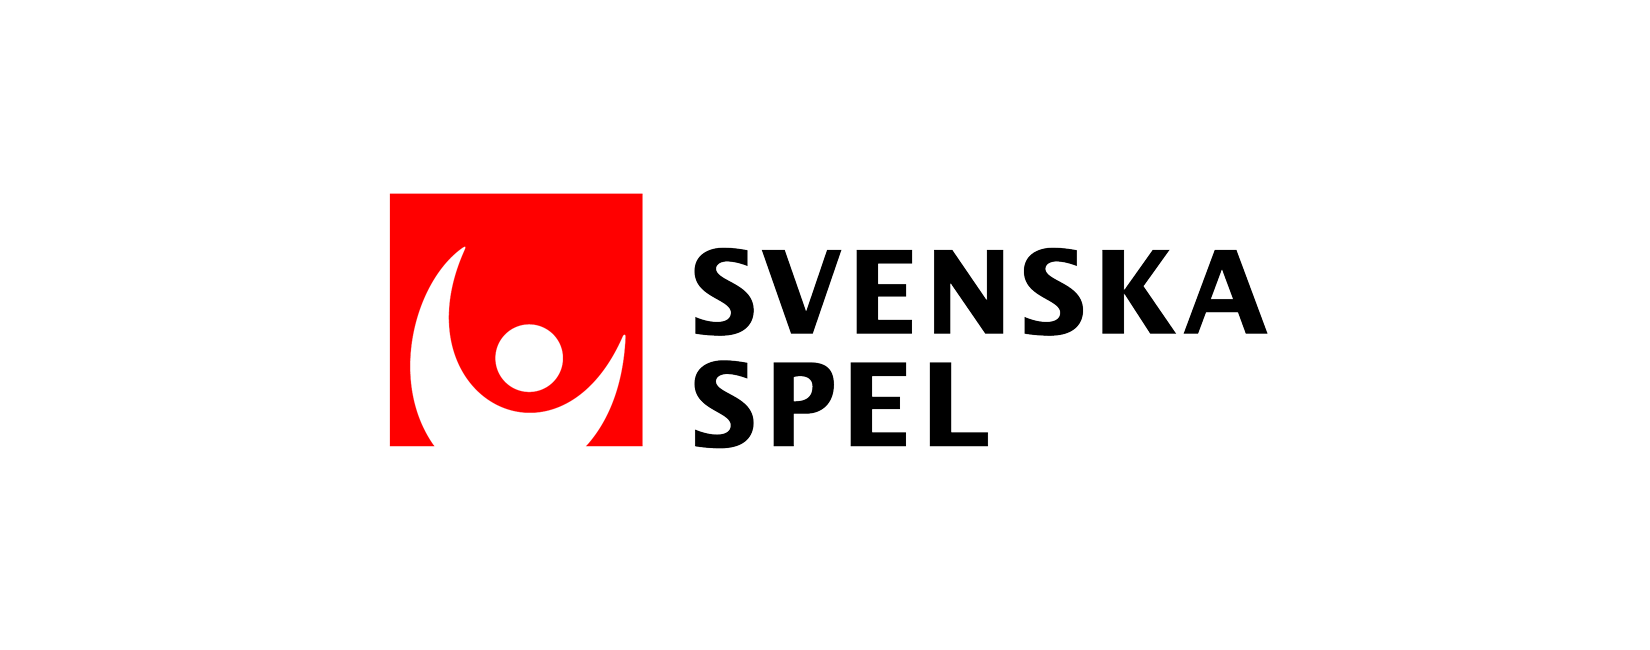 Svenska_Spel_tvaradig_1650x650